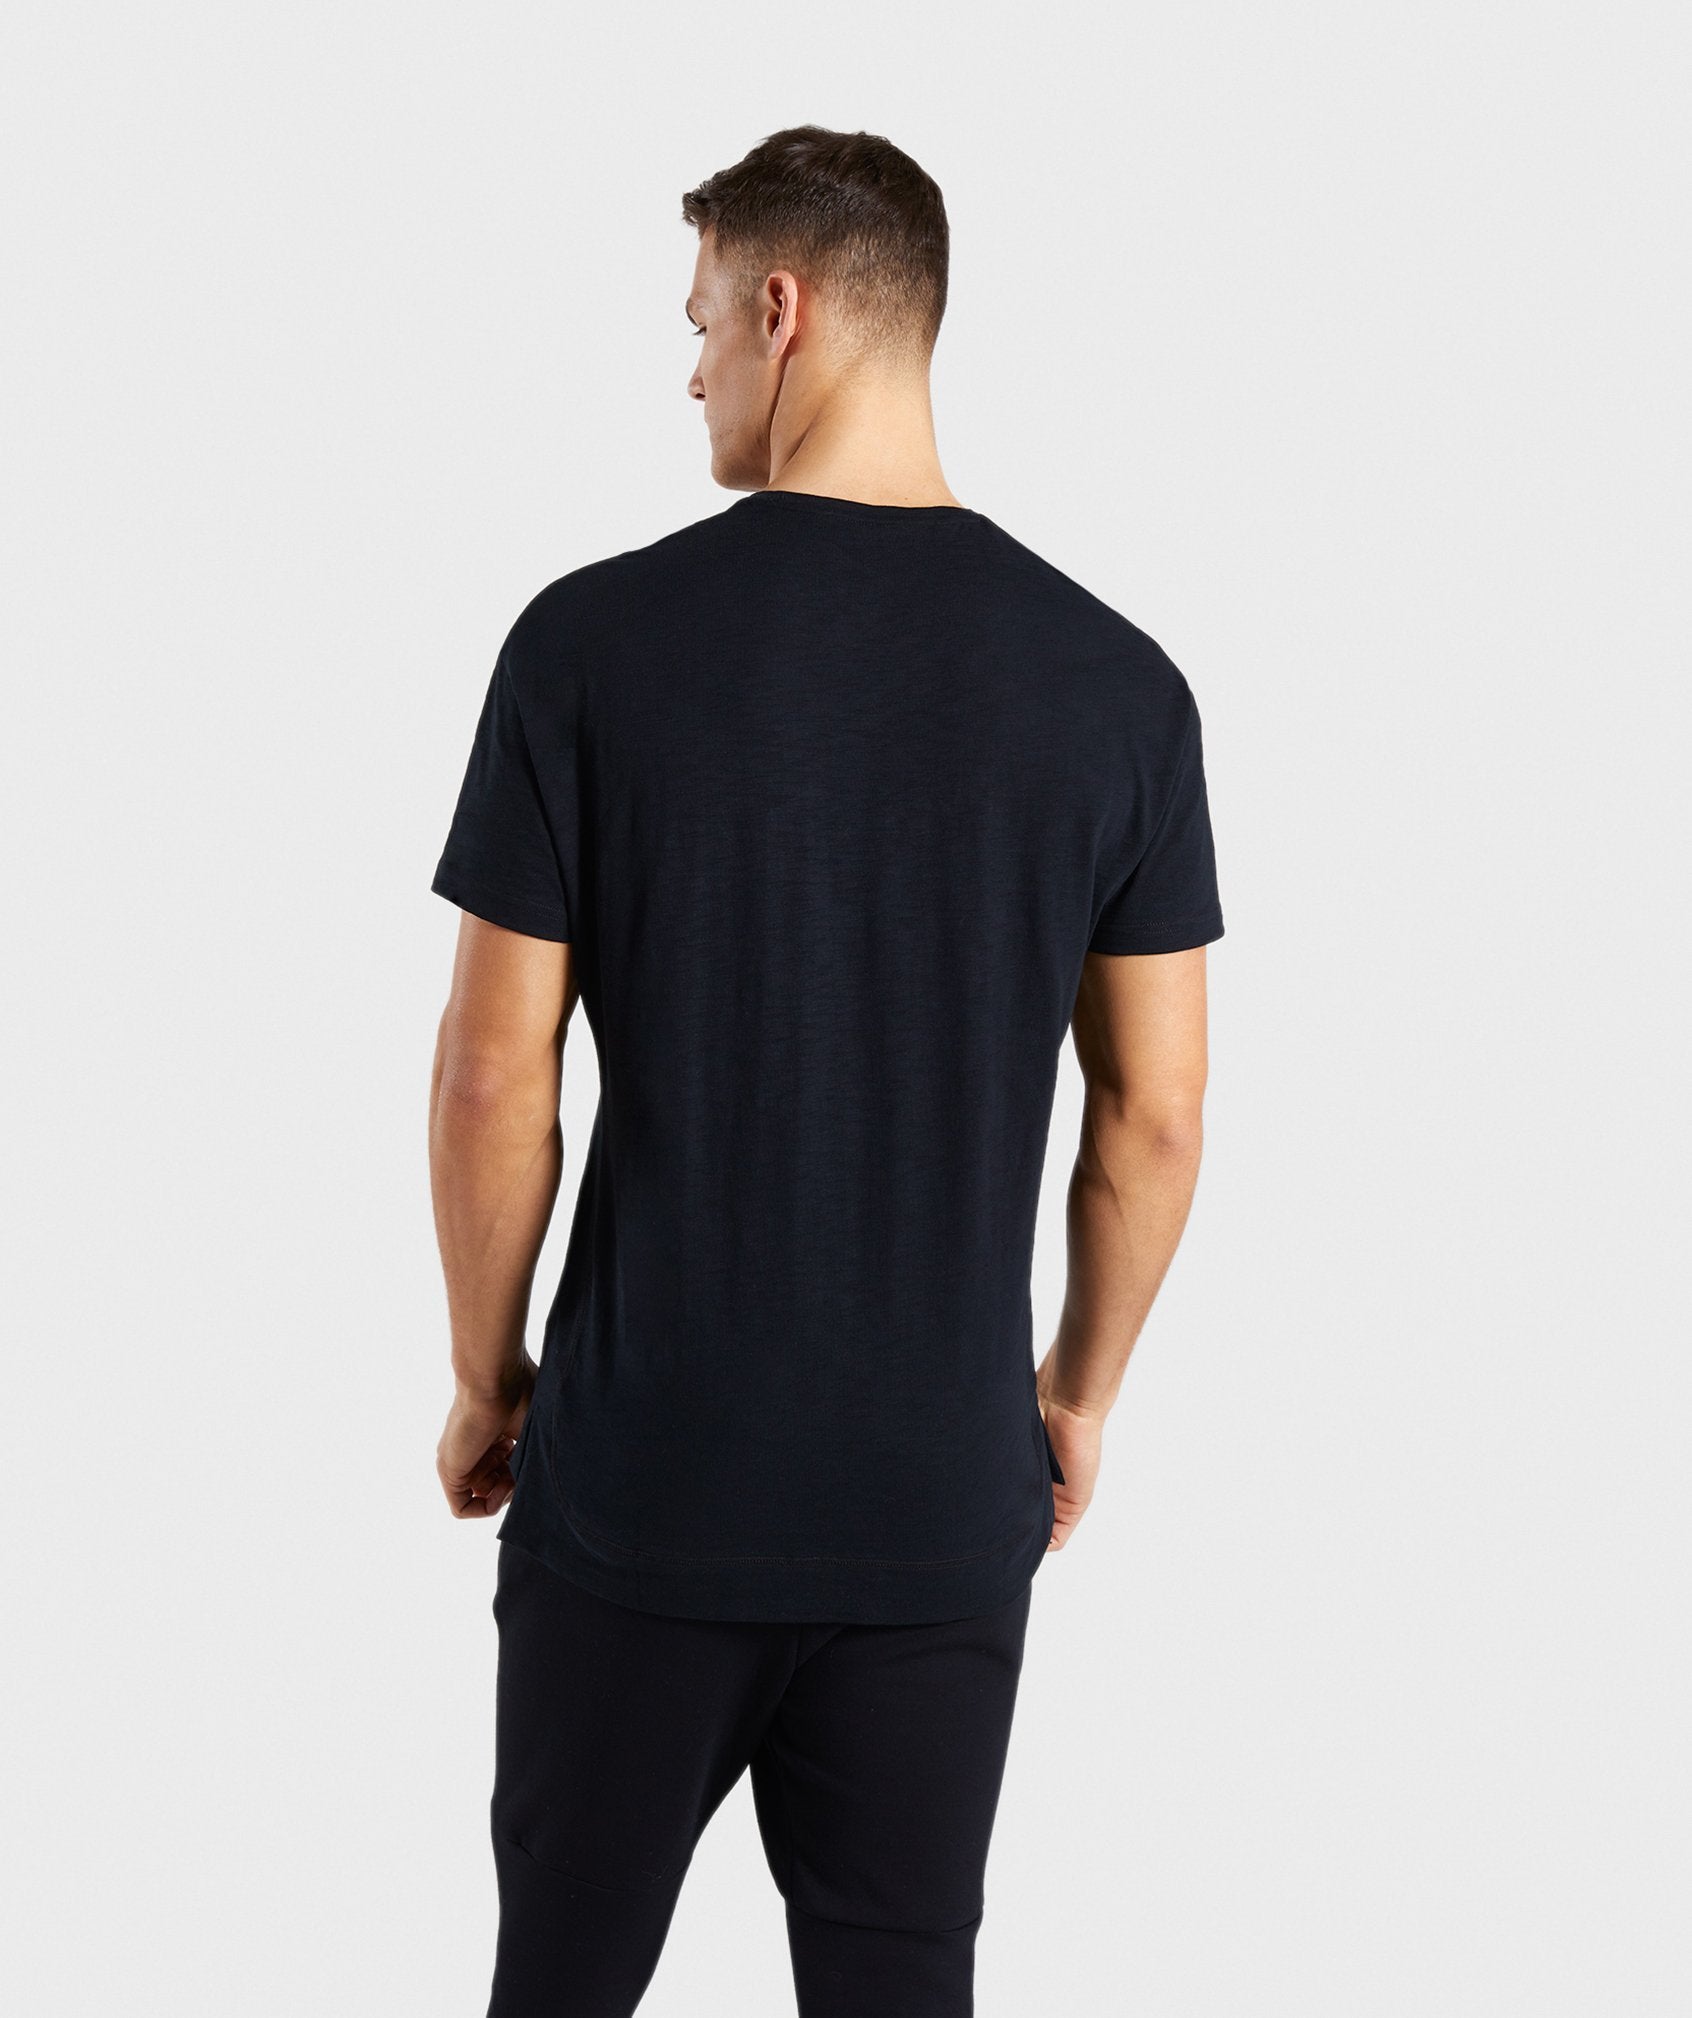 Tonal T-Shirt in Black - view 2